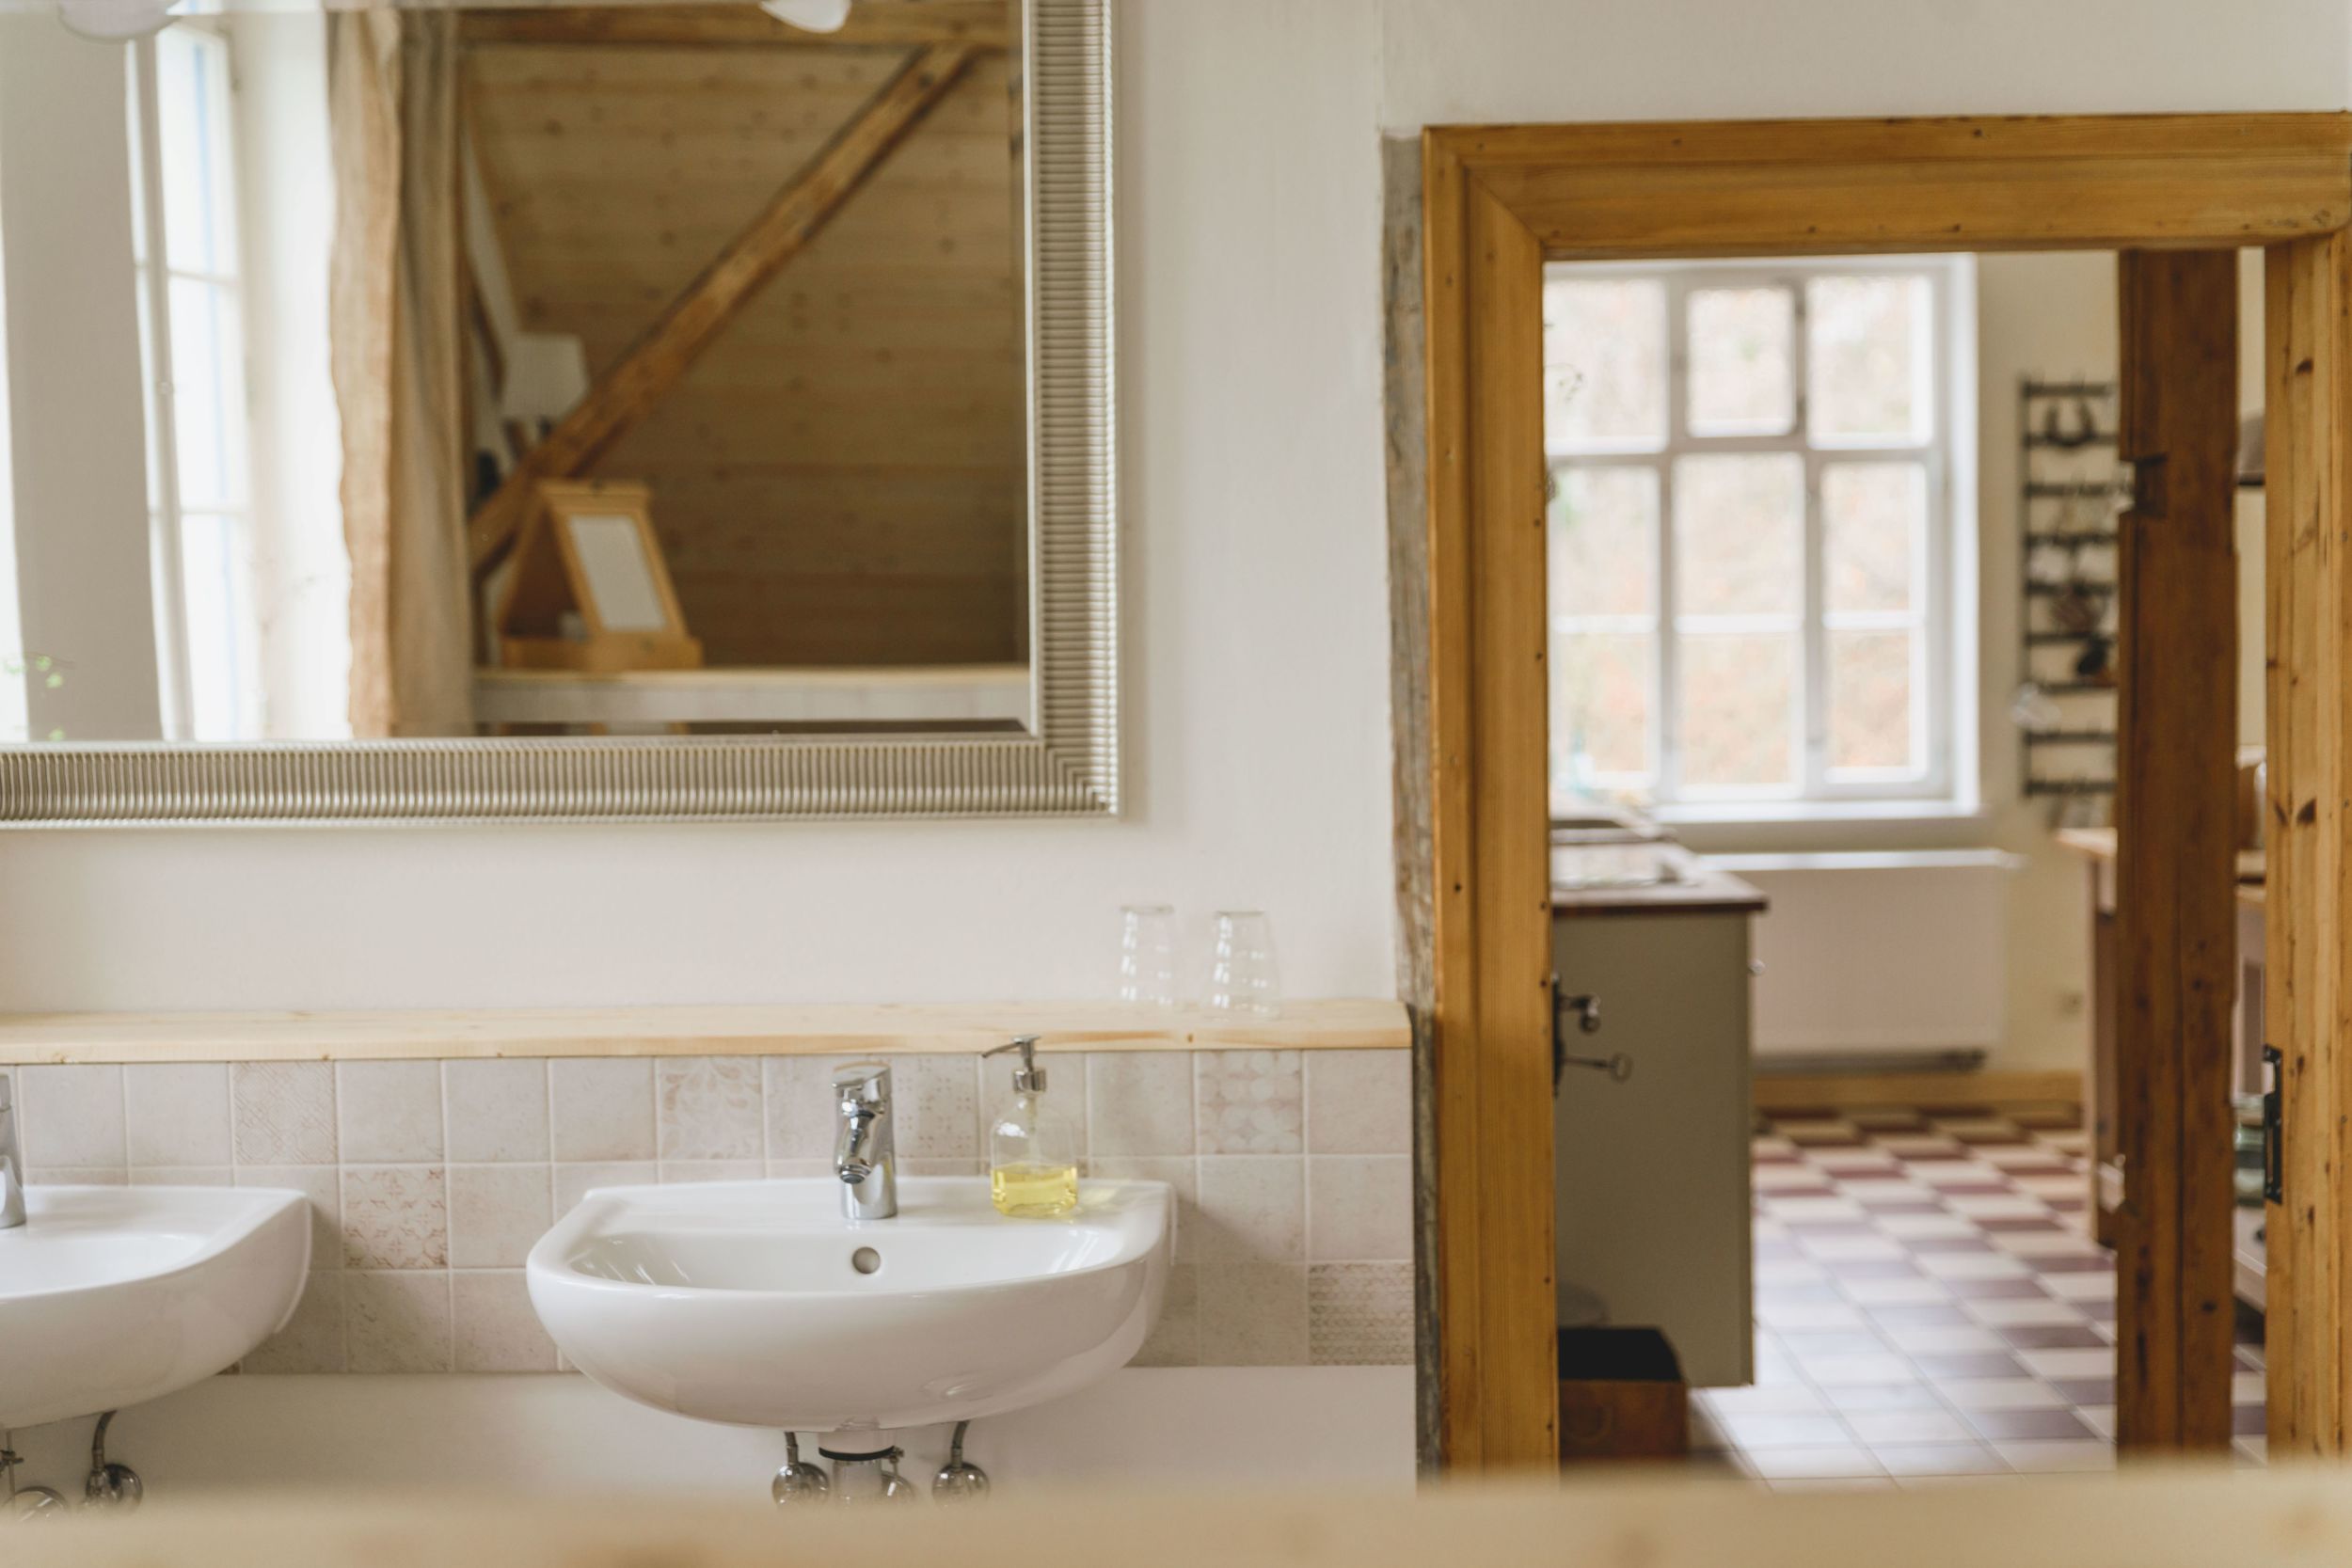 Blick vom Badezimmer in die Wohnküche. Im Vordergrund zwei Waschbecken und ein großer Spiegel, im Hintergrund eine offene Tür zur Küche.